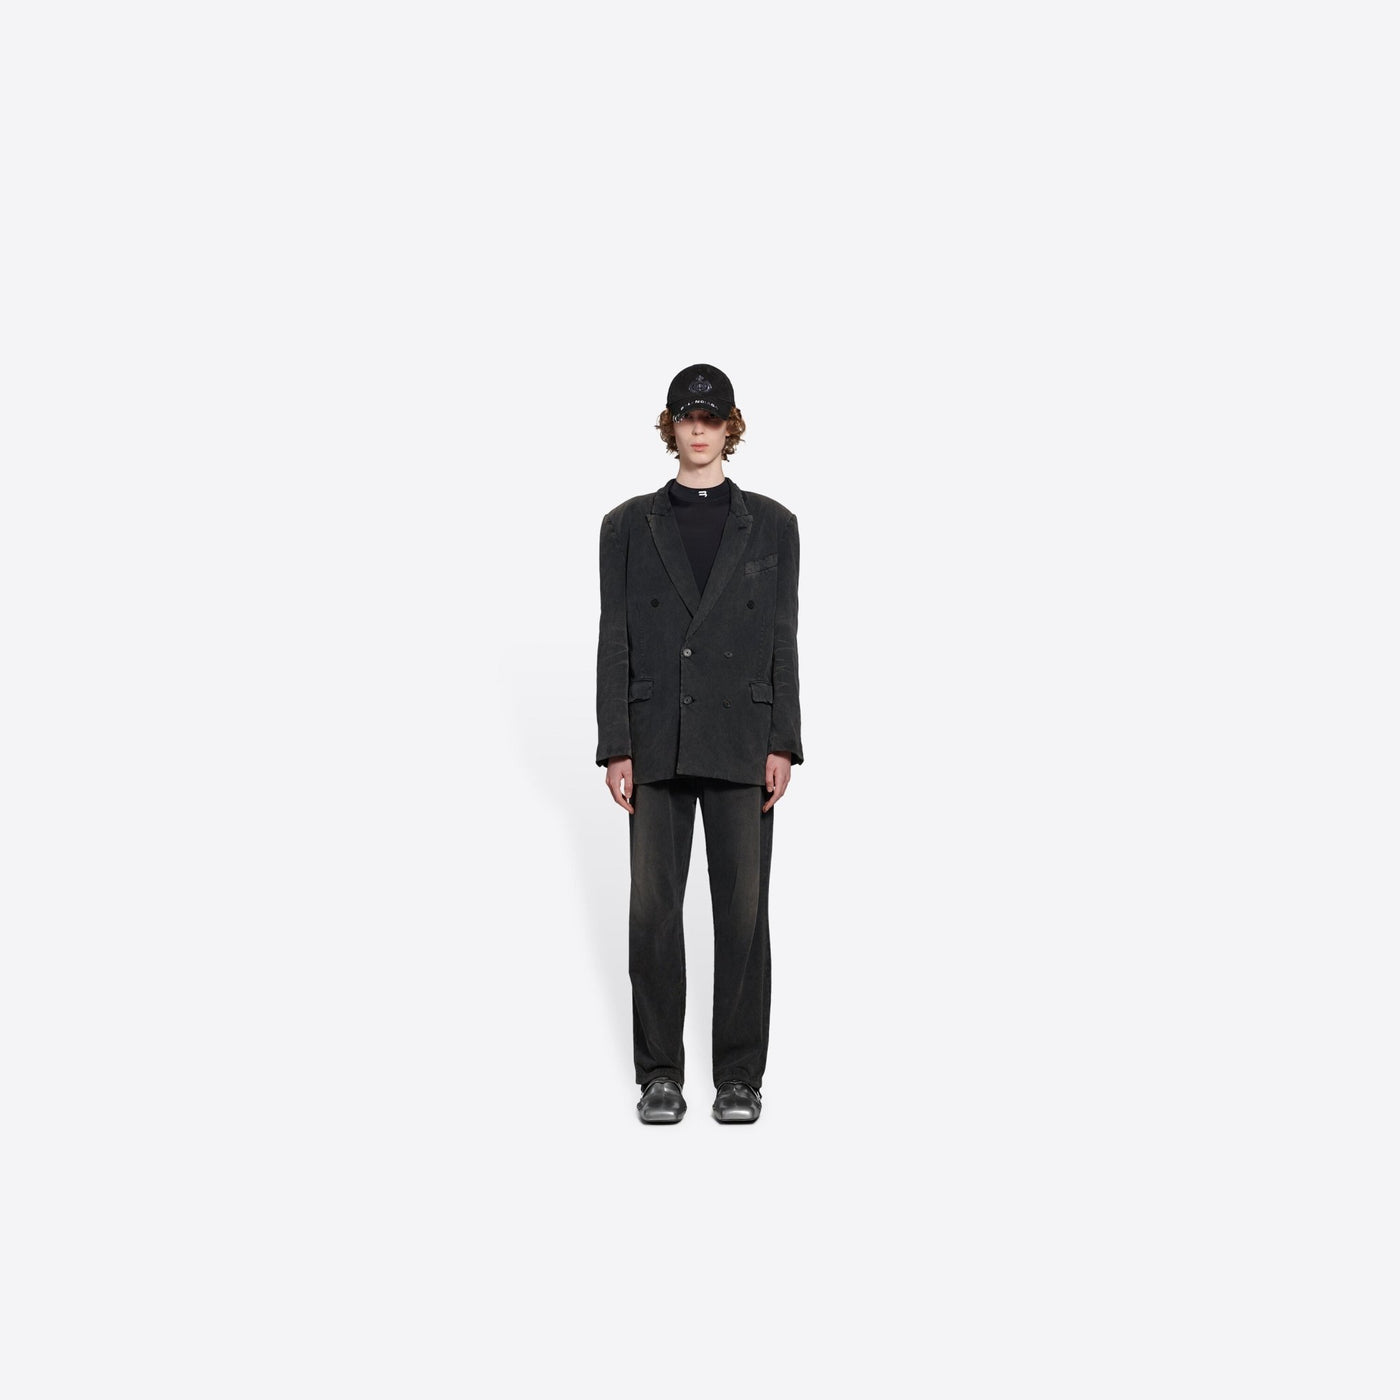 Balenciaga - Veste Slim Worn-Out en jersey vintage noir - Lothaire boutiques (6940060319909)